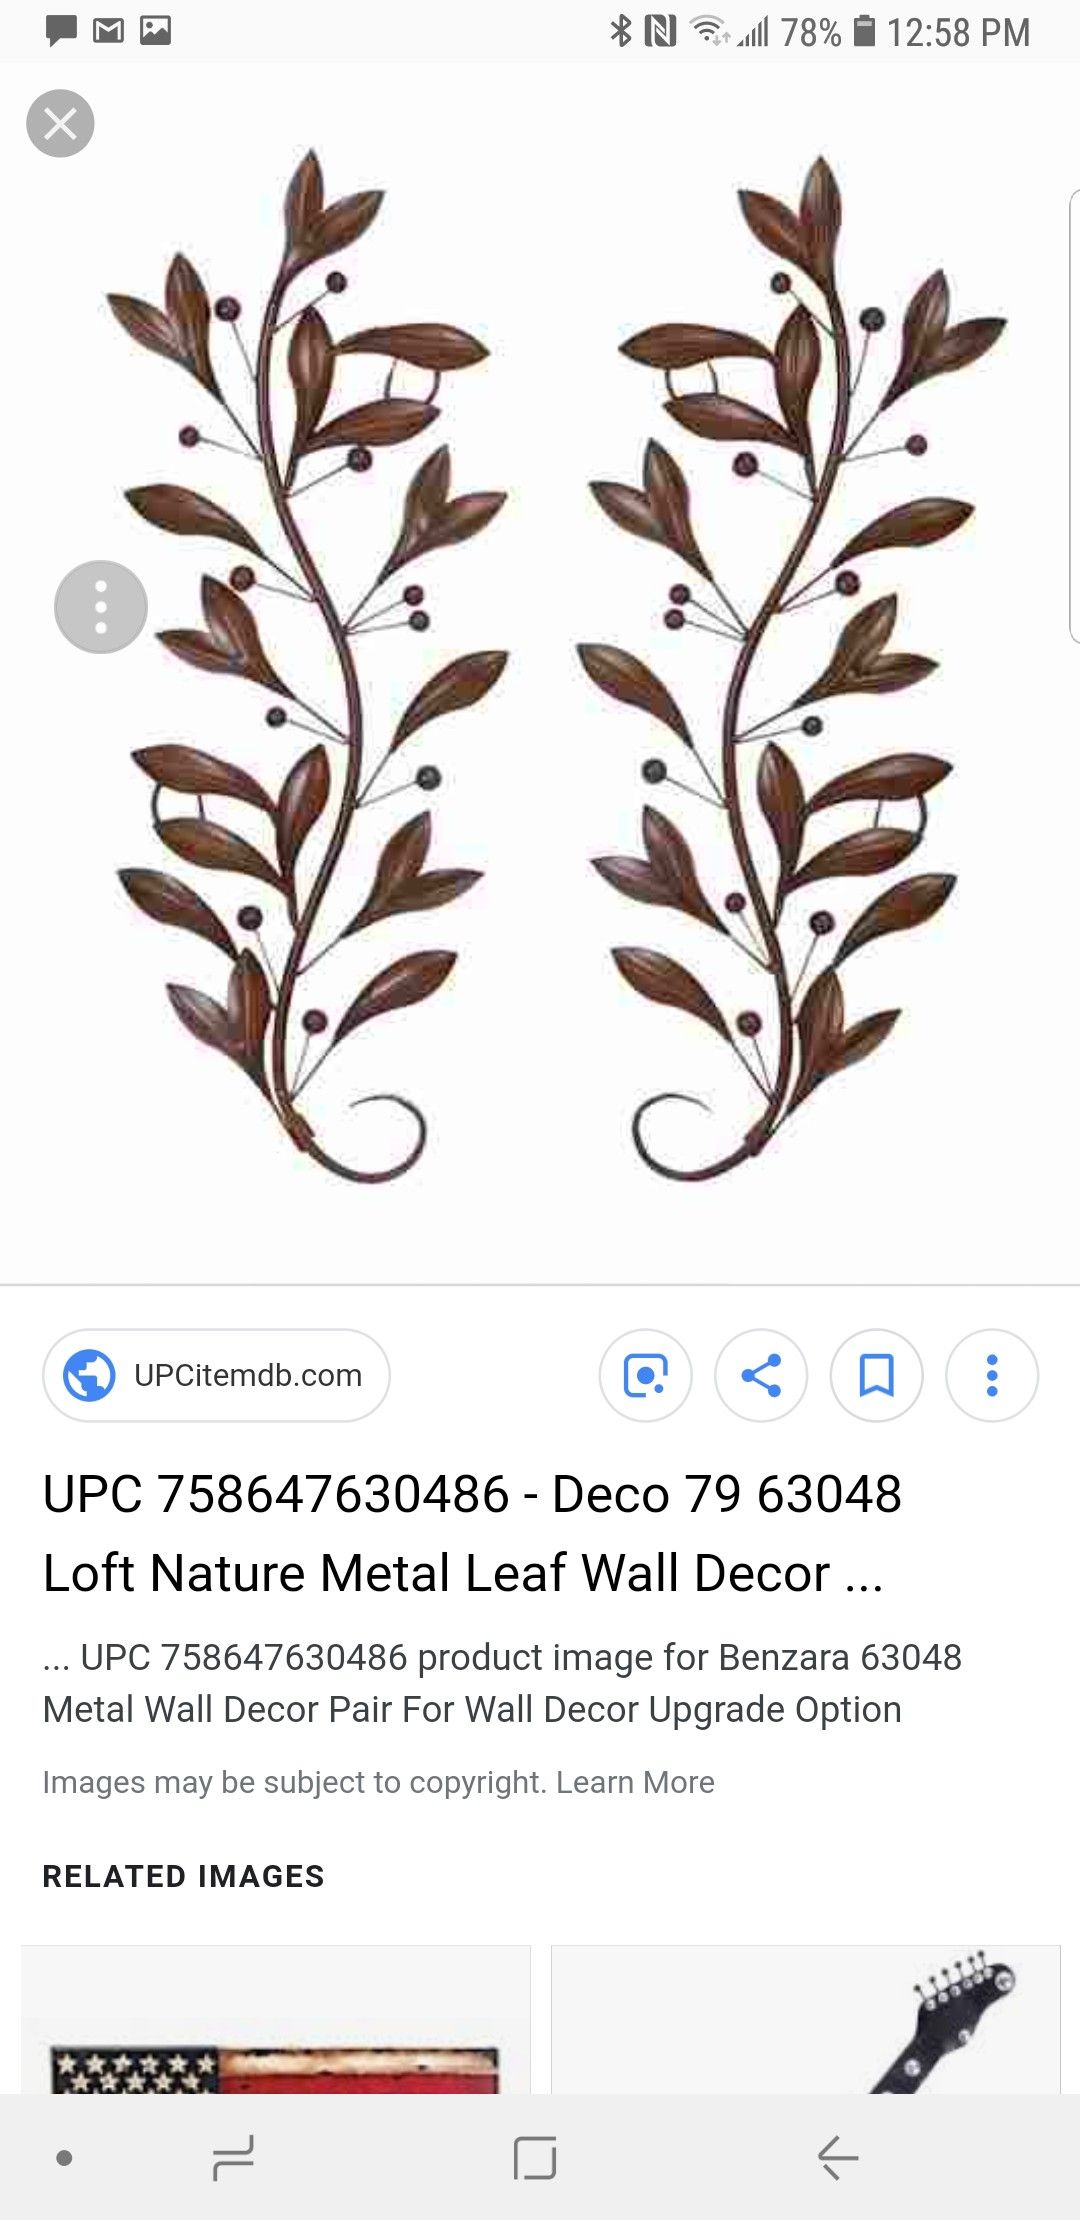 Decmode Metal Wall Decor Pair -brown